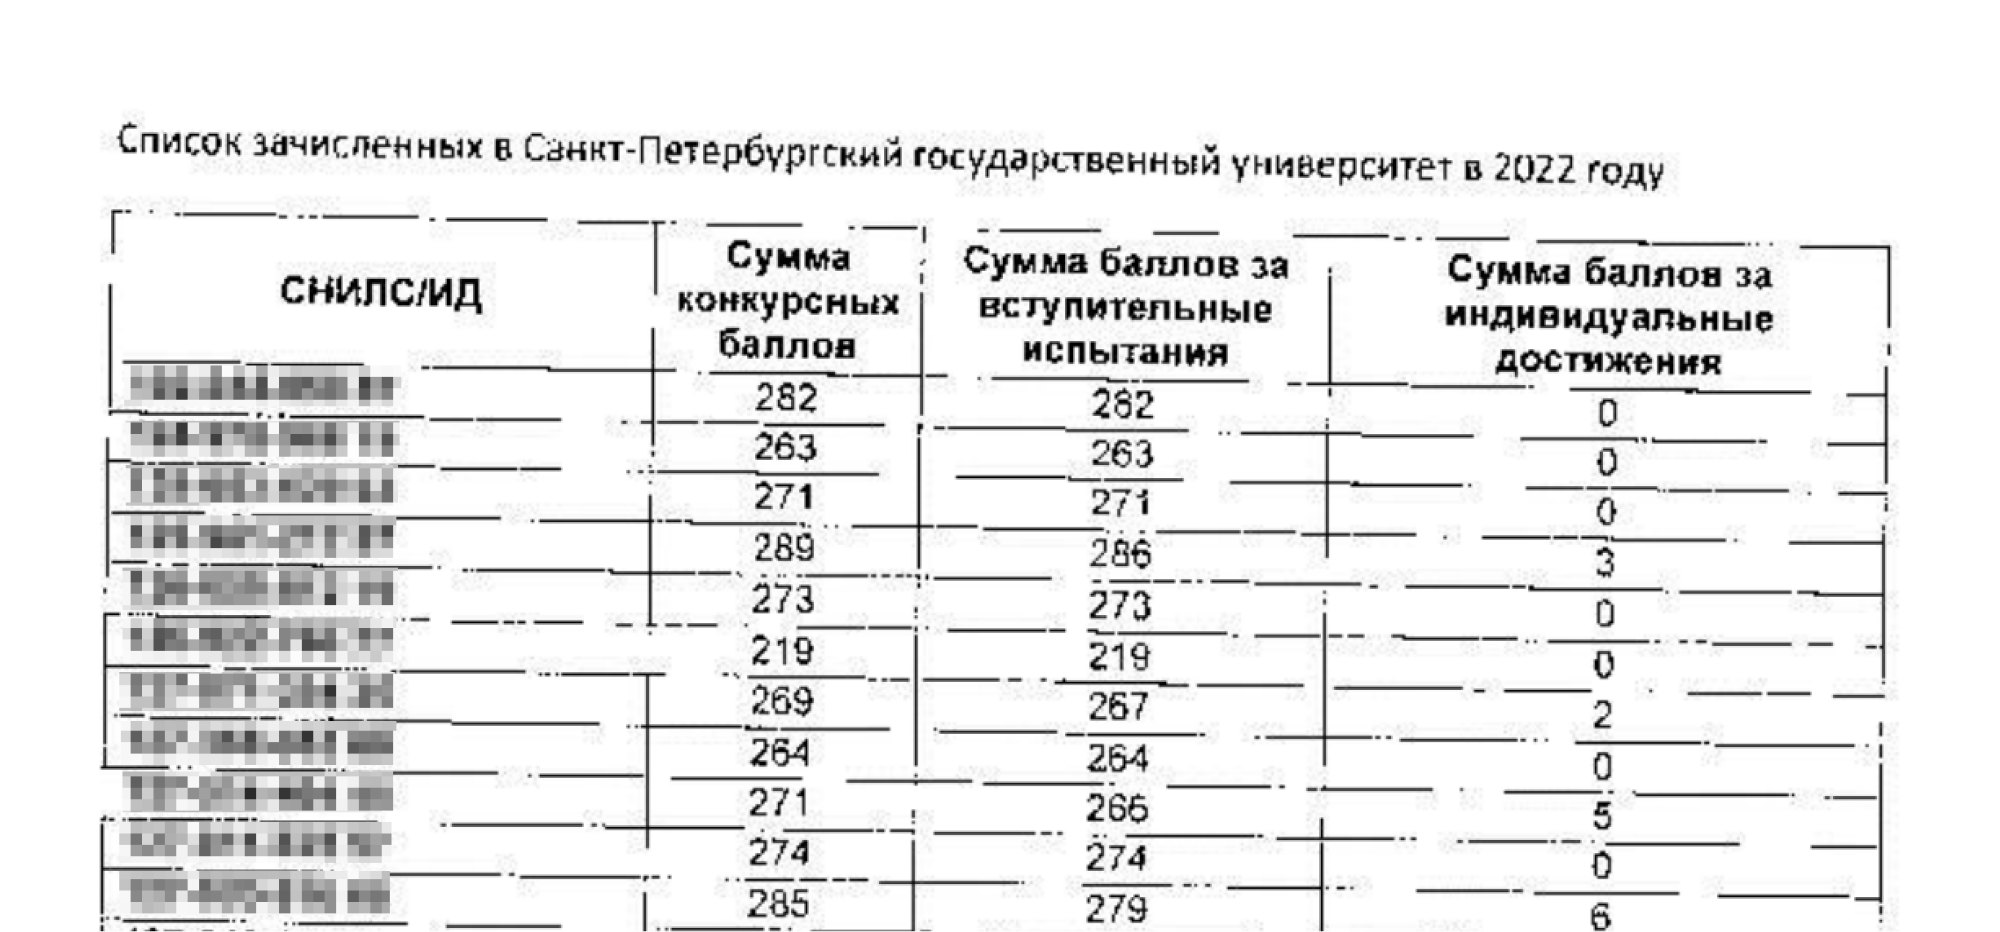 Сведения о зачисленных в СПбГУ в 2022 году. Обратите внимание, что тогда требования к содержанию не предъявлялись